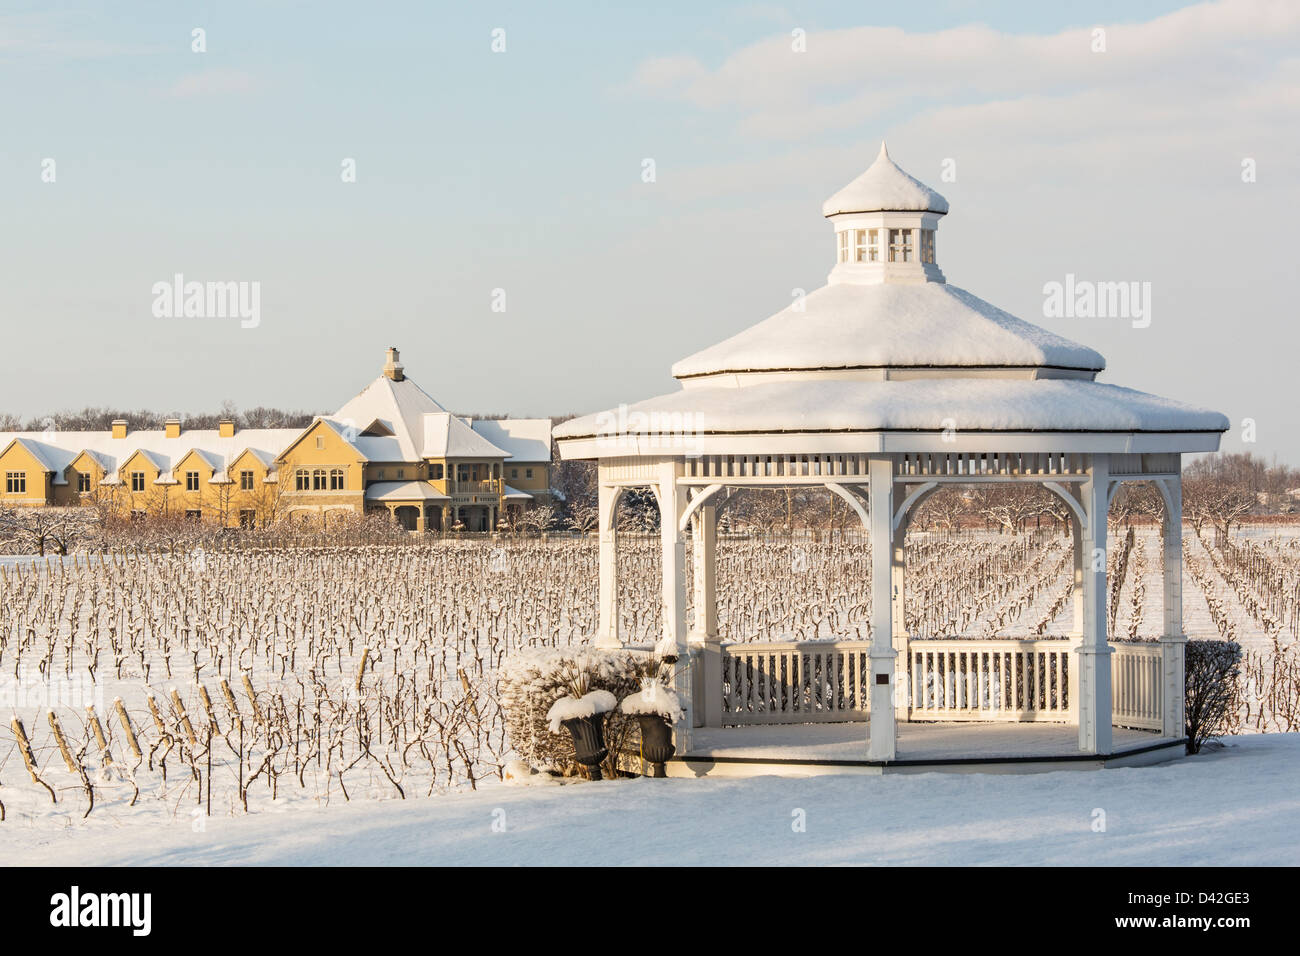 Canada,Ontario,Niagara-on-the-Lake Ontario, Peller Estate Winery en hiver avec un belvédère en premier plan Banque D'Images